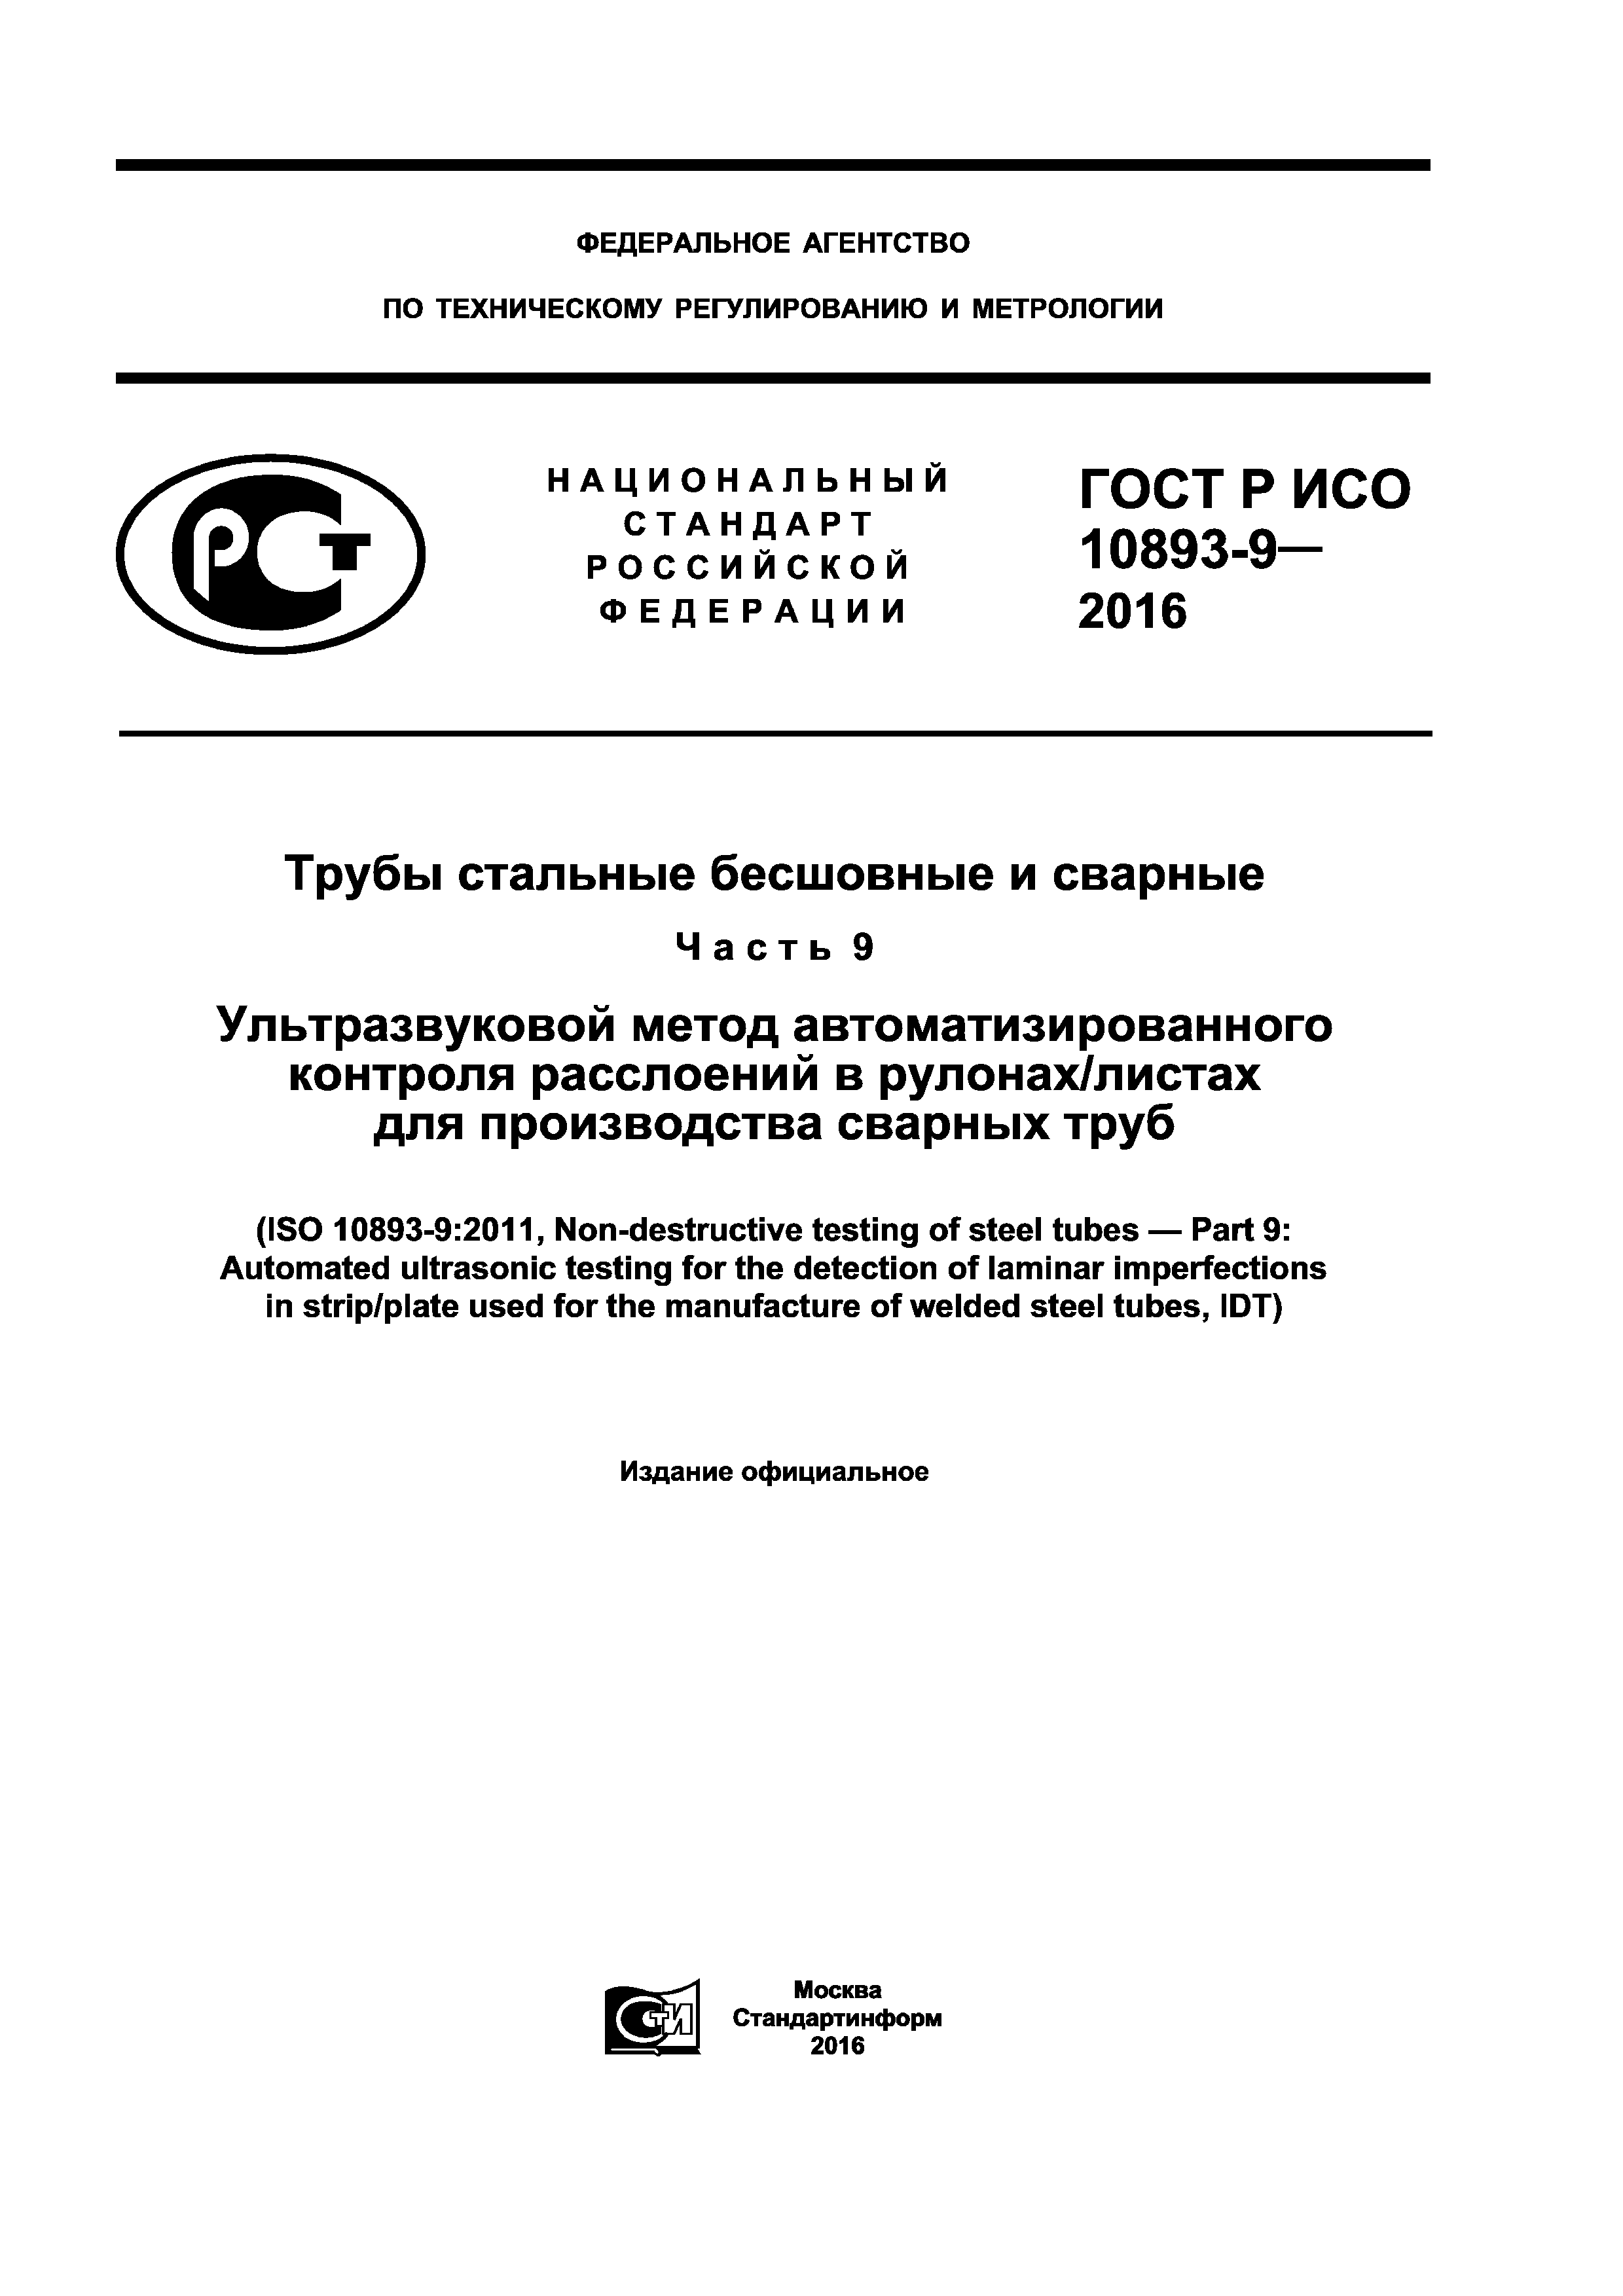 ГОСТ Р ИСО 10893-9-2016